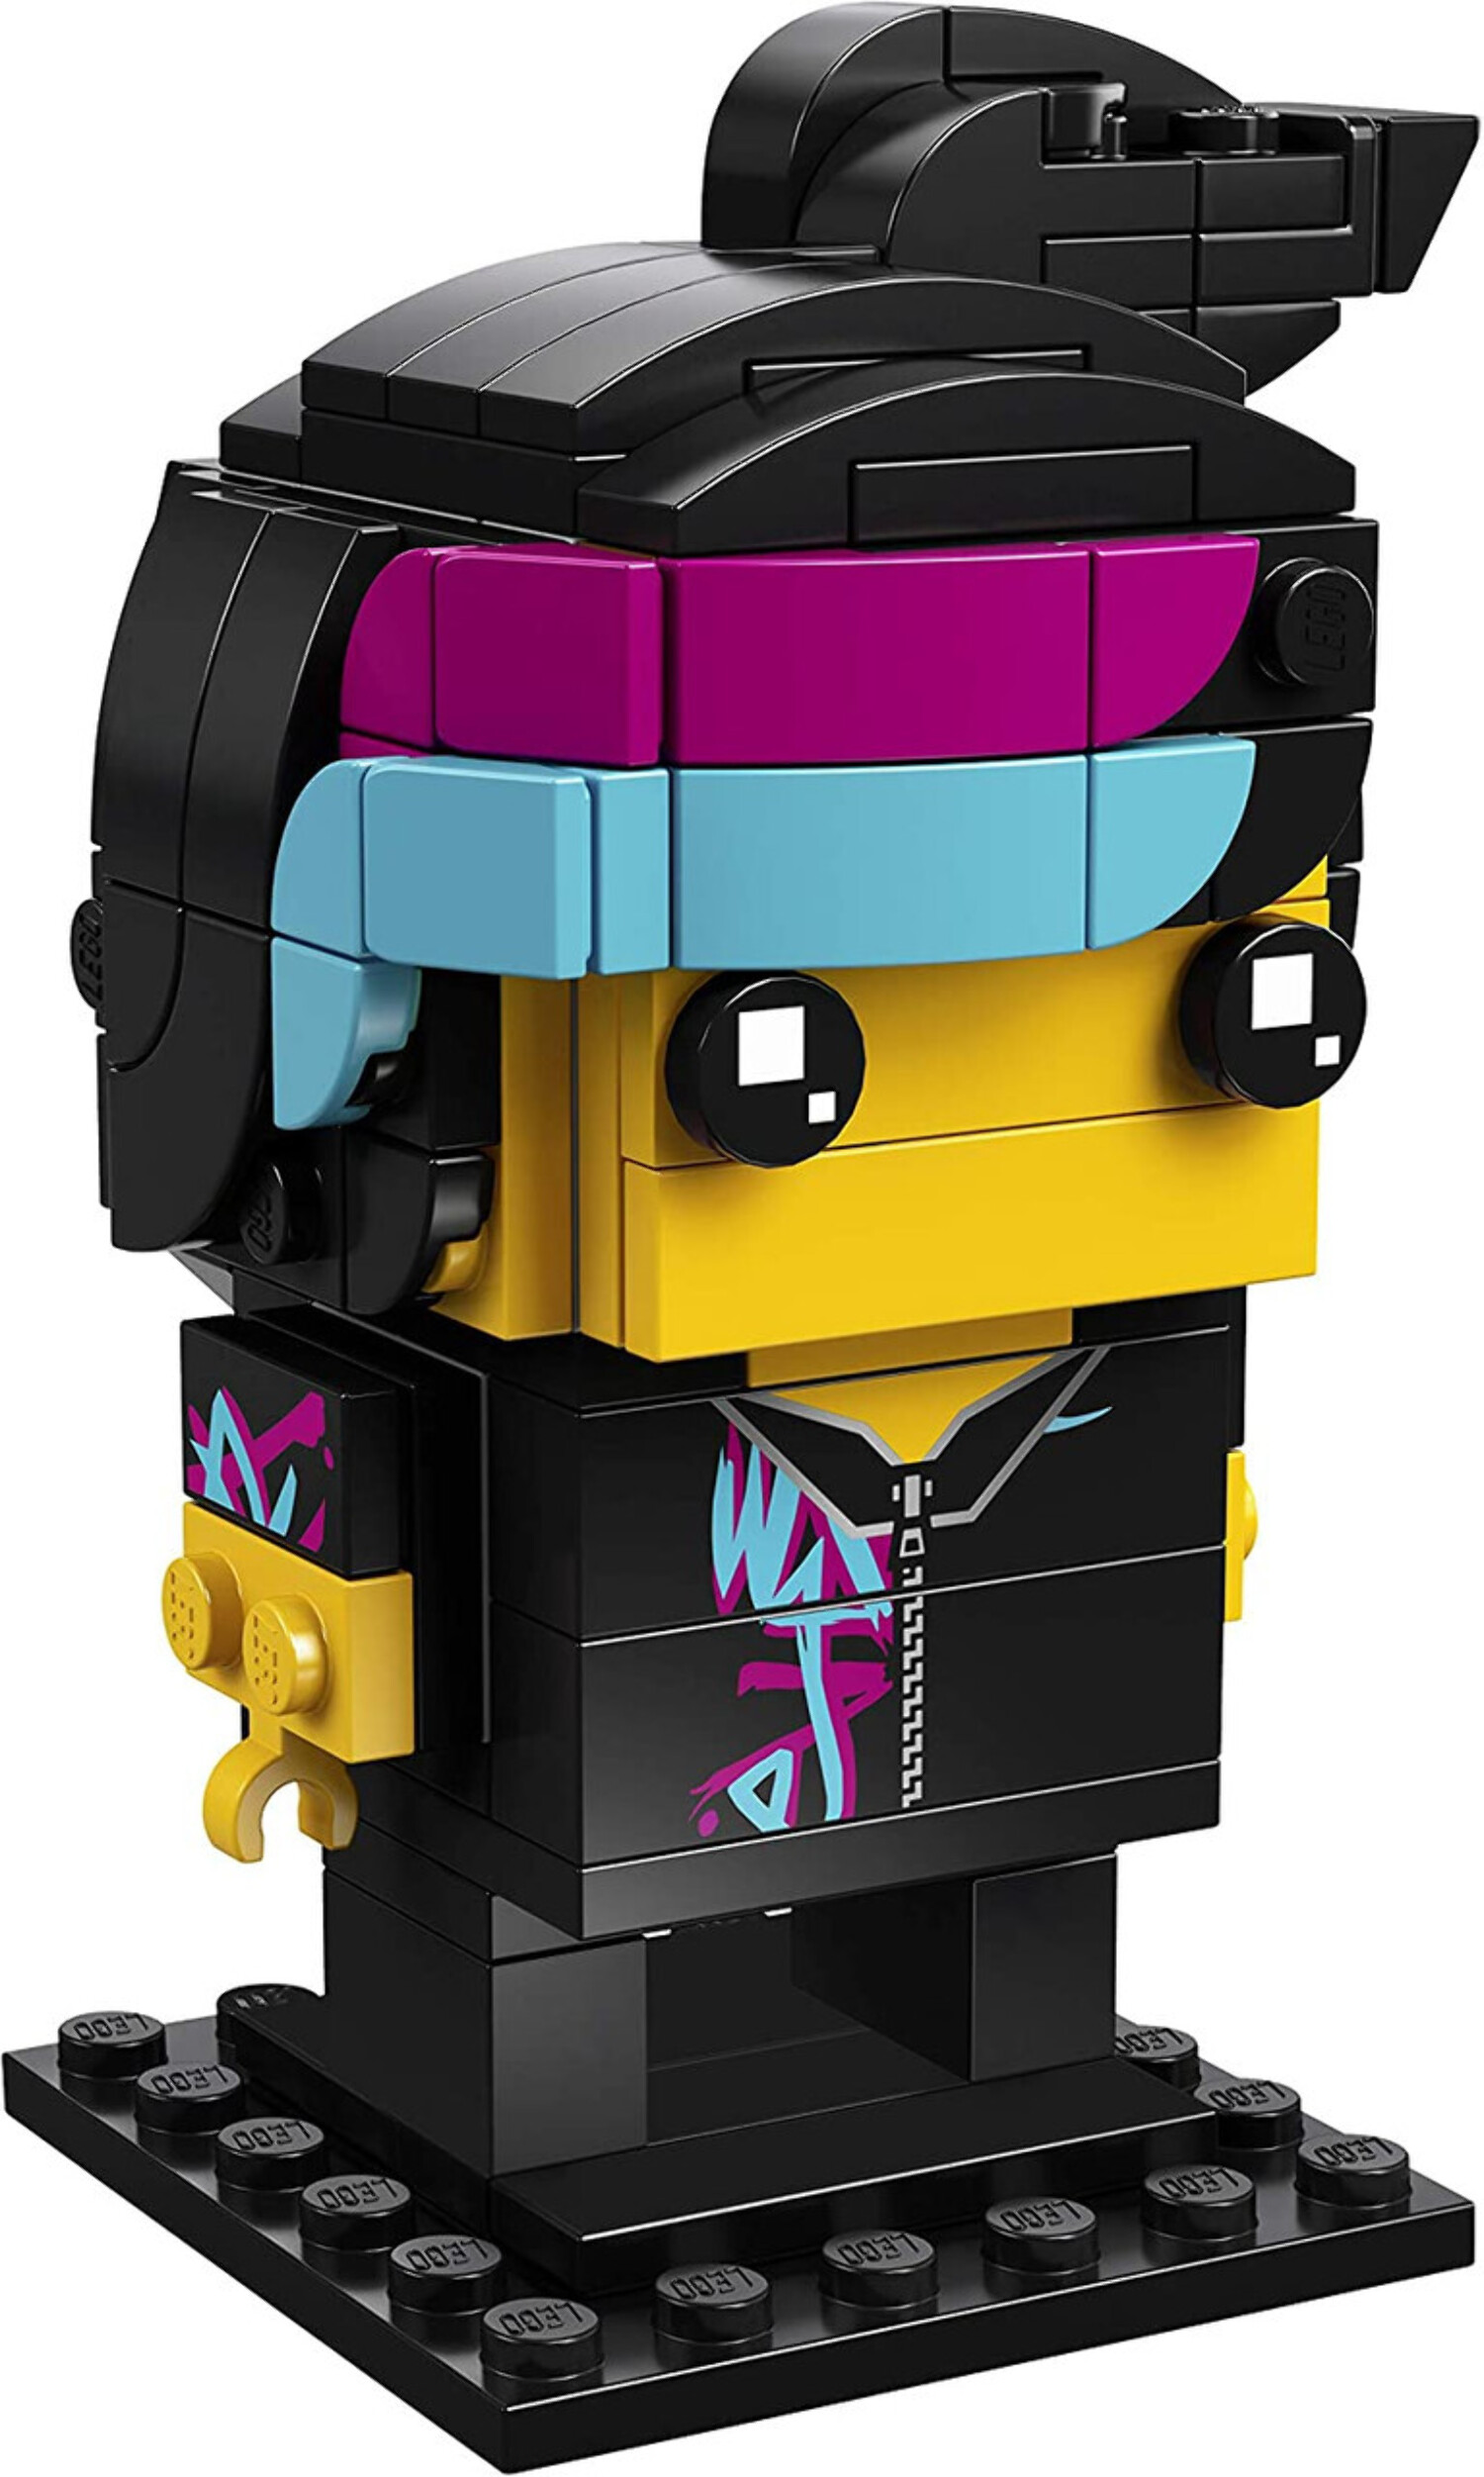 LEGO 41635 BrickHeadz Wyldstyle - image 4 of 5